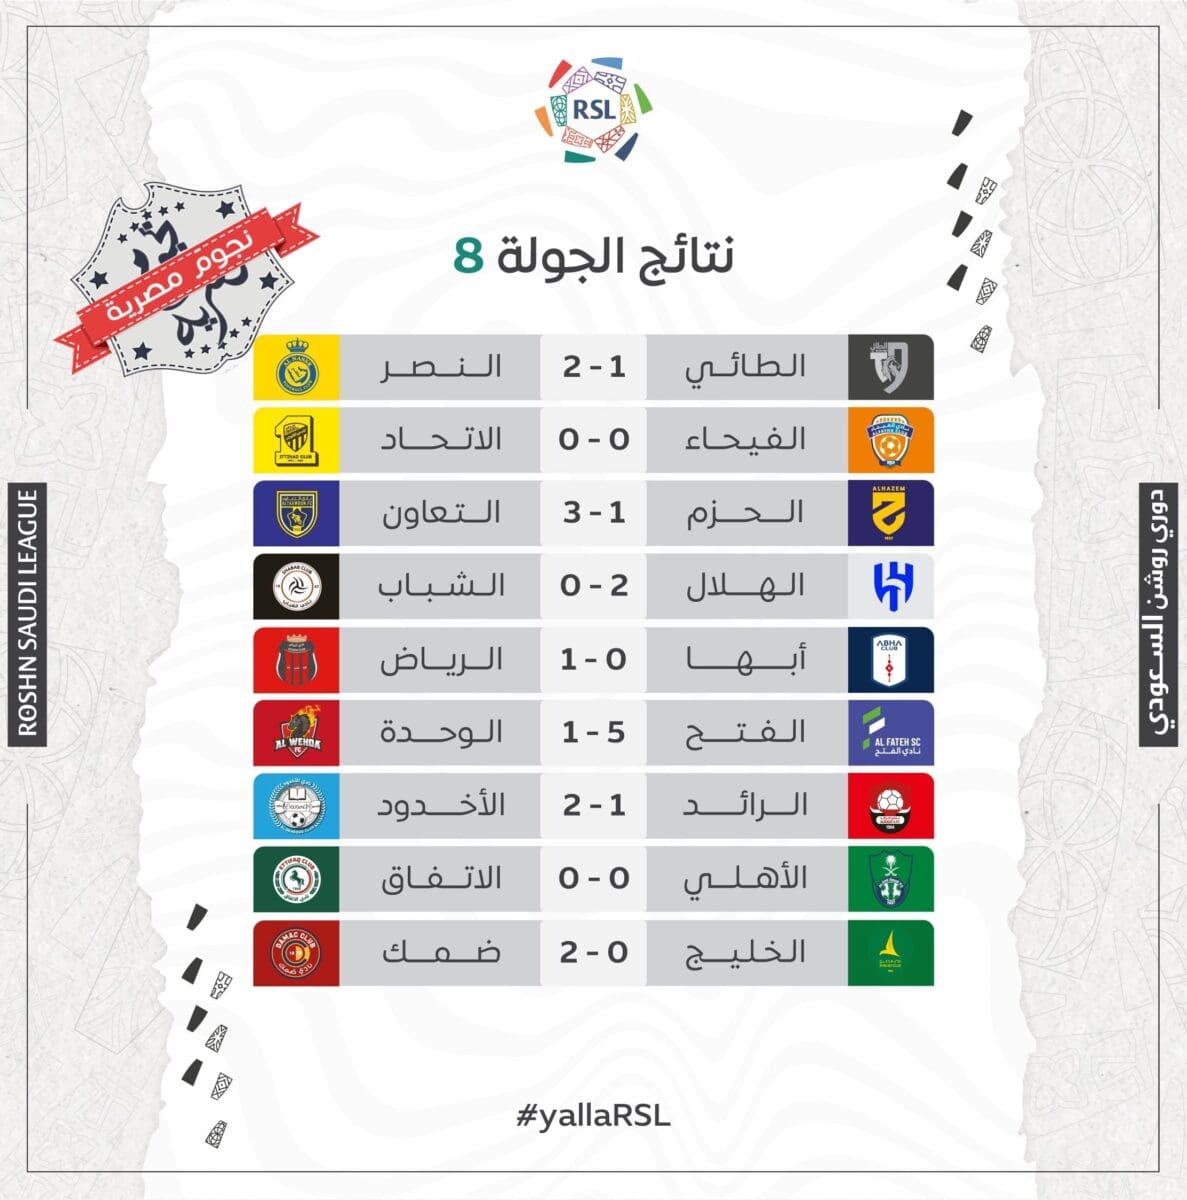 نتائج مباريات الجولة 8 من دوري روشن السعودي للمحترفين موسم 2023_2024 (مصدر الصورة. حساب المسابقة موقع إكس)